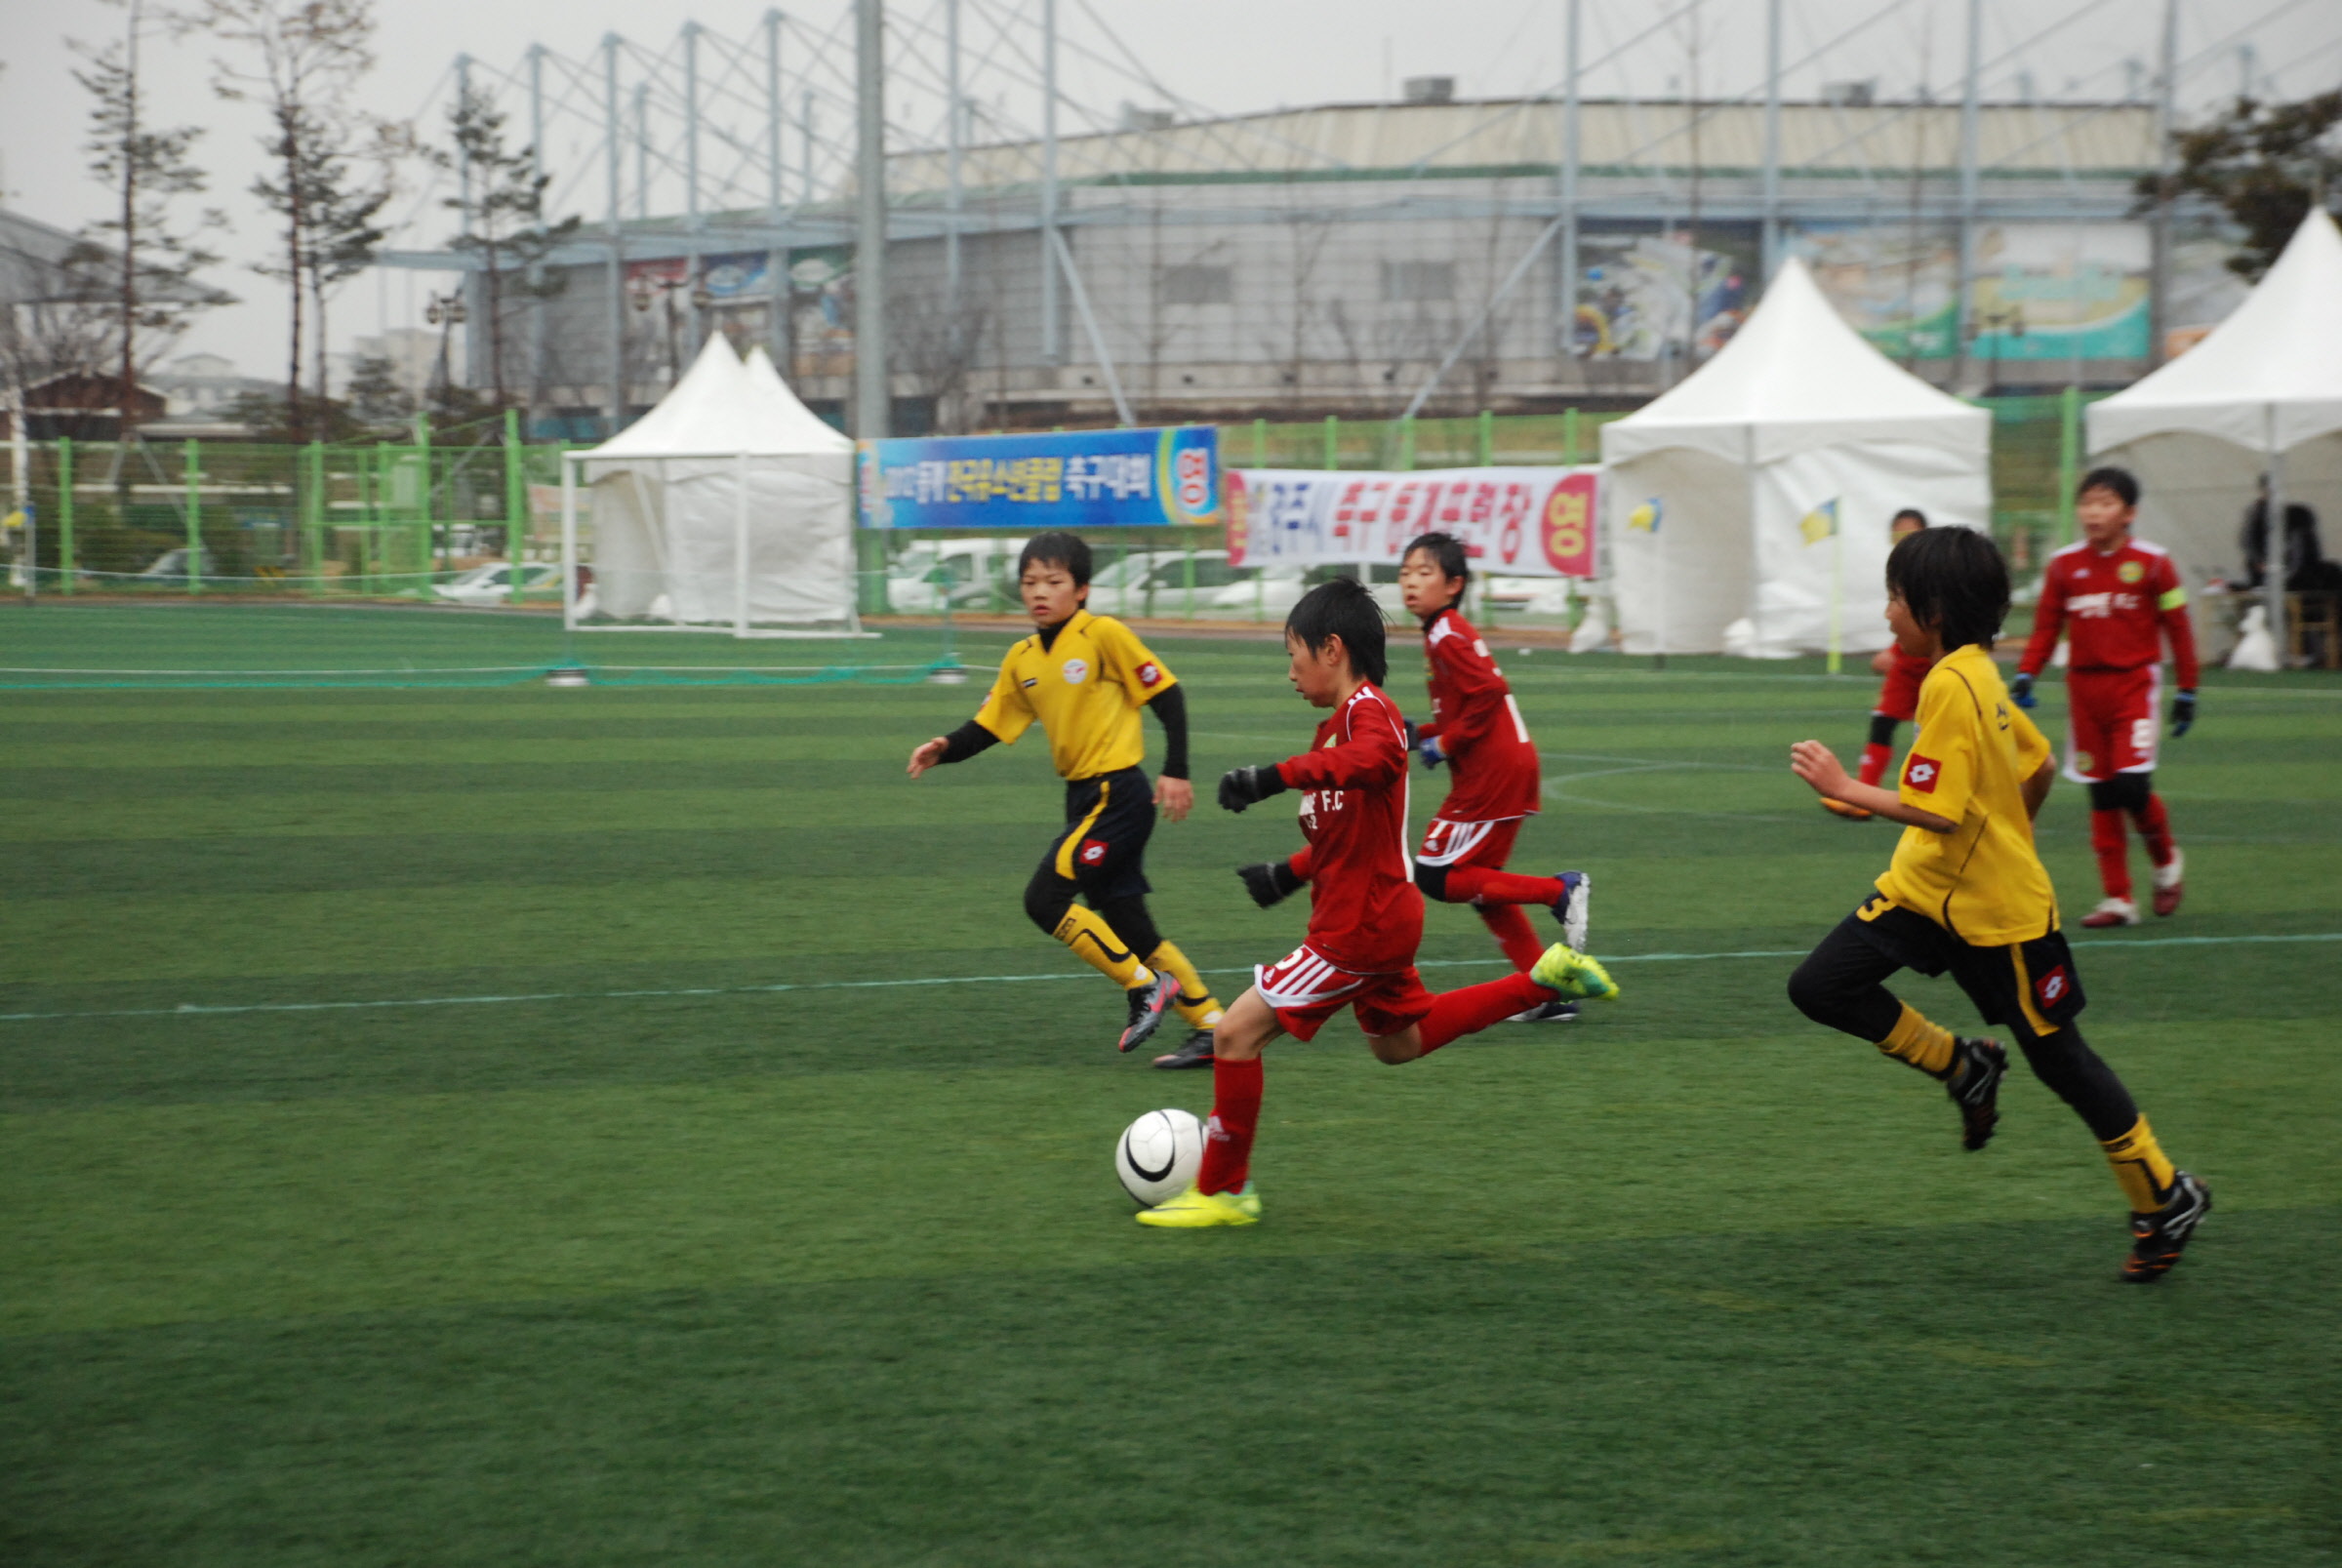 경주컵 2013 동계 전국 유소년클럽 축구페스티벌 개최!